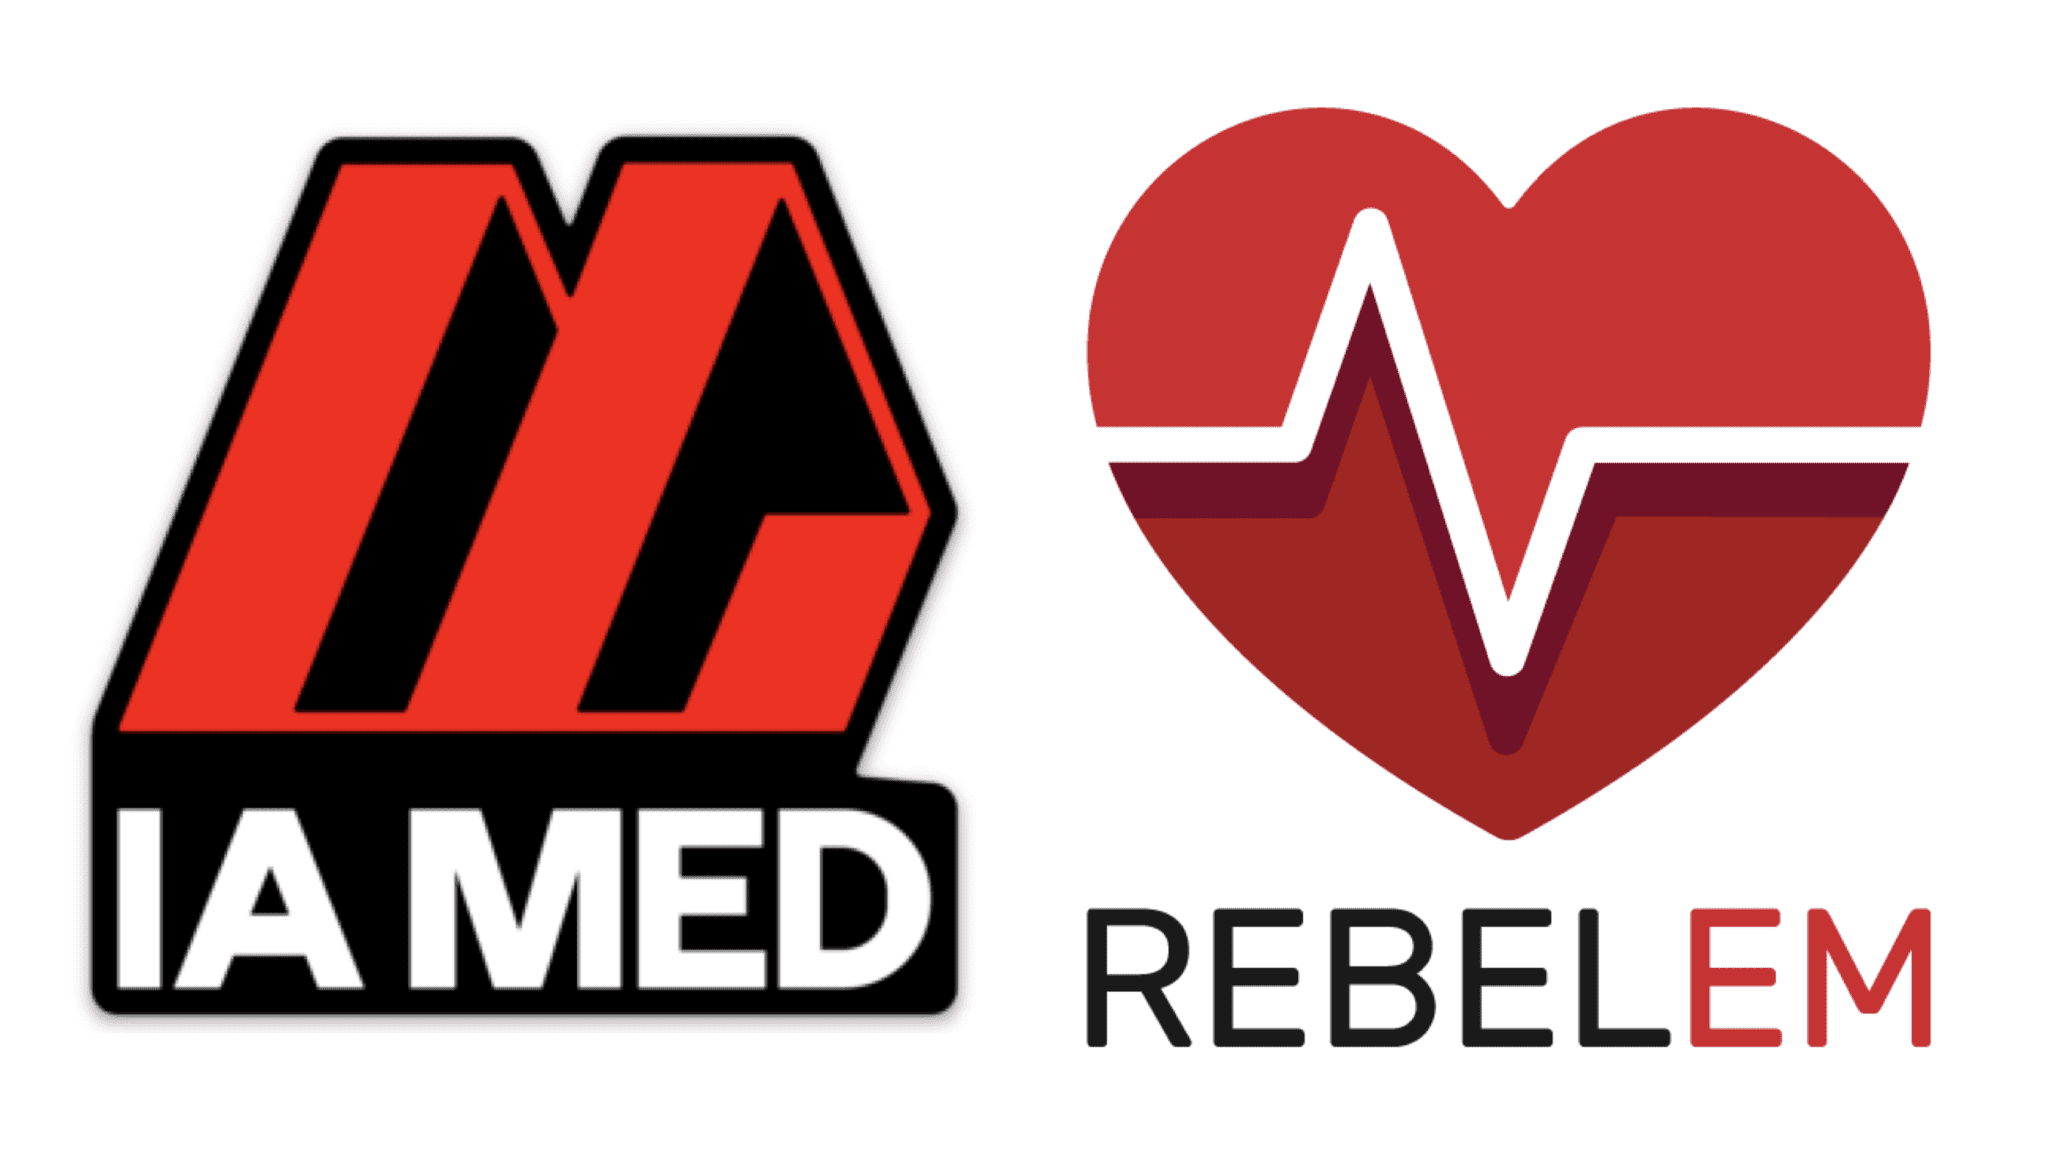 C.M.e. Logo - REBEL IA MED CME LOGO - REBEL EM - Emergency Medicine Blog